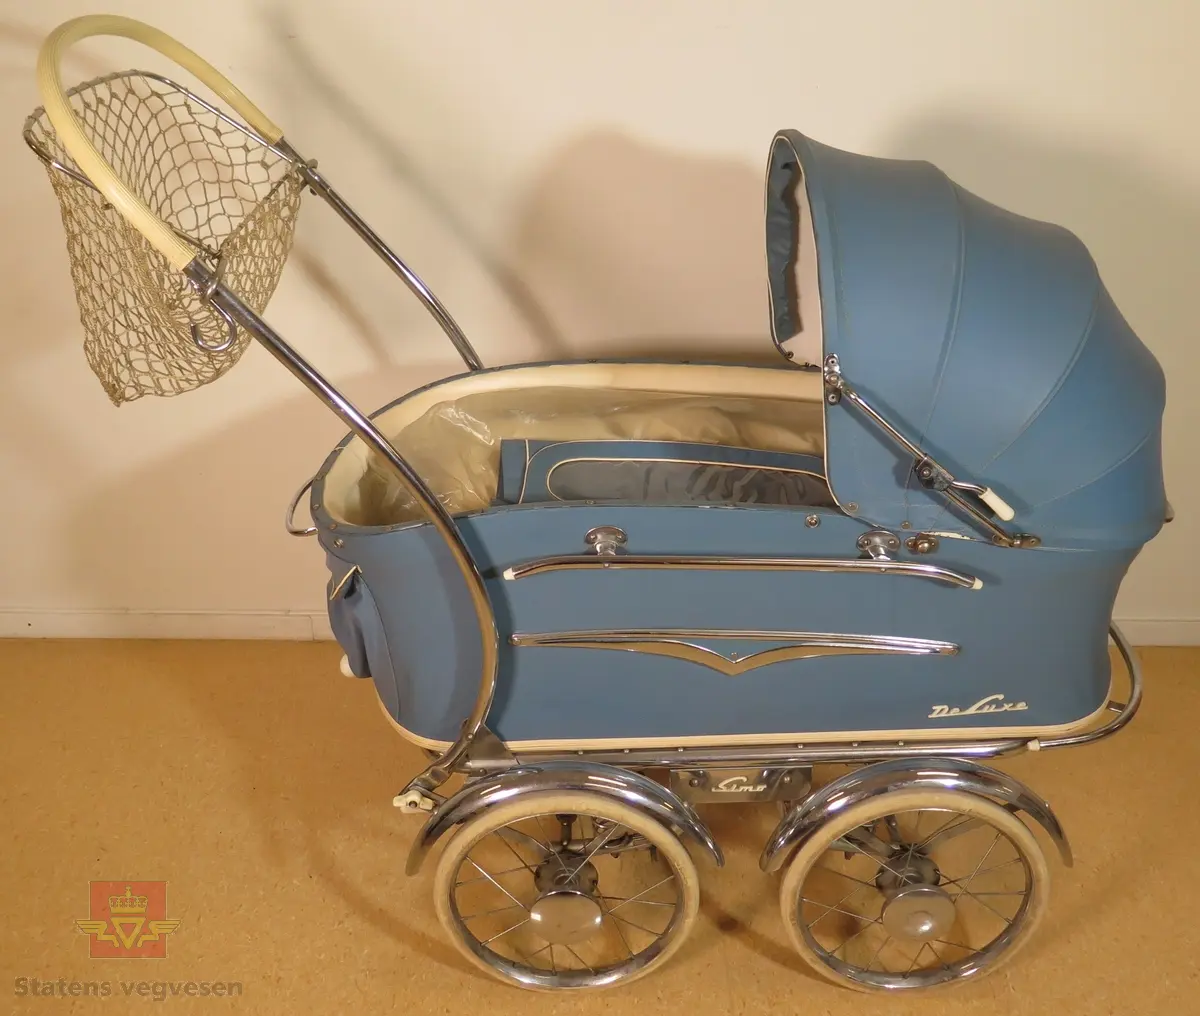 Barnevogn, 2-akslet med totalt fire hjul. Hjulene har kompaktgummi. Vogna er blå med hvite og forniklede detaljer. Trekk, madrass og dyne føger med.